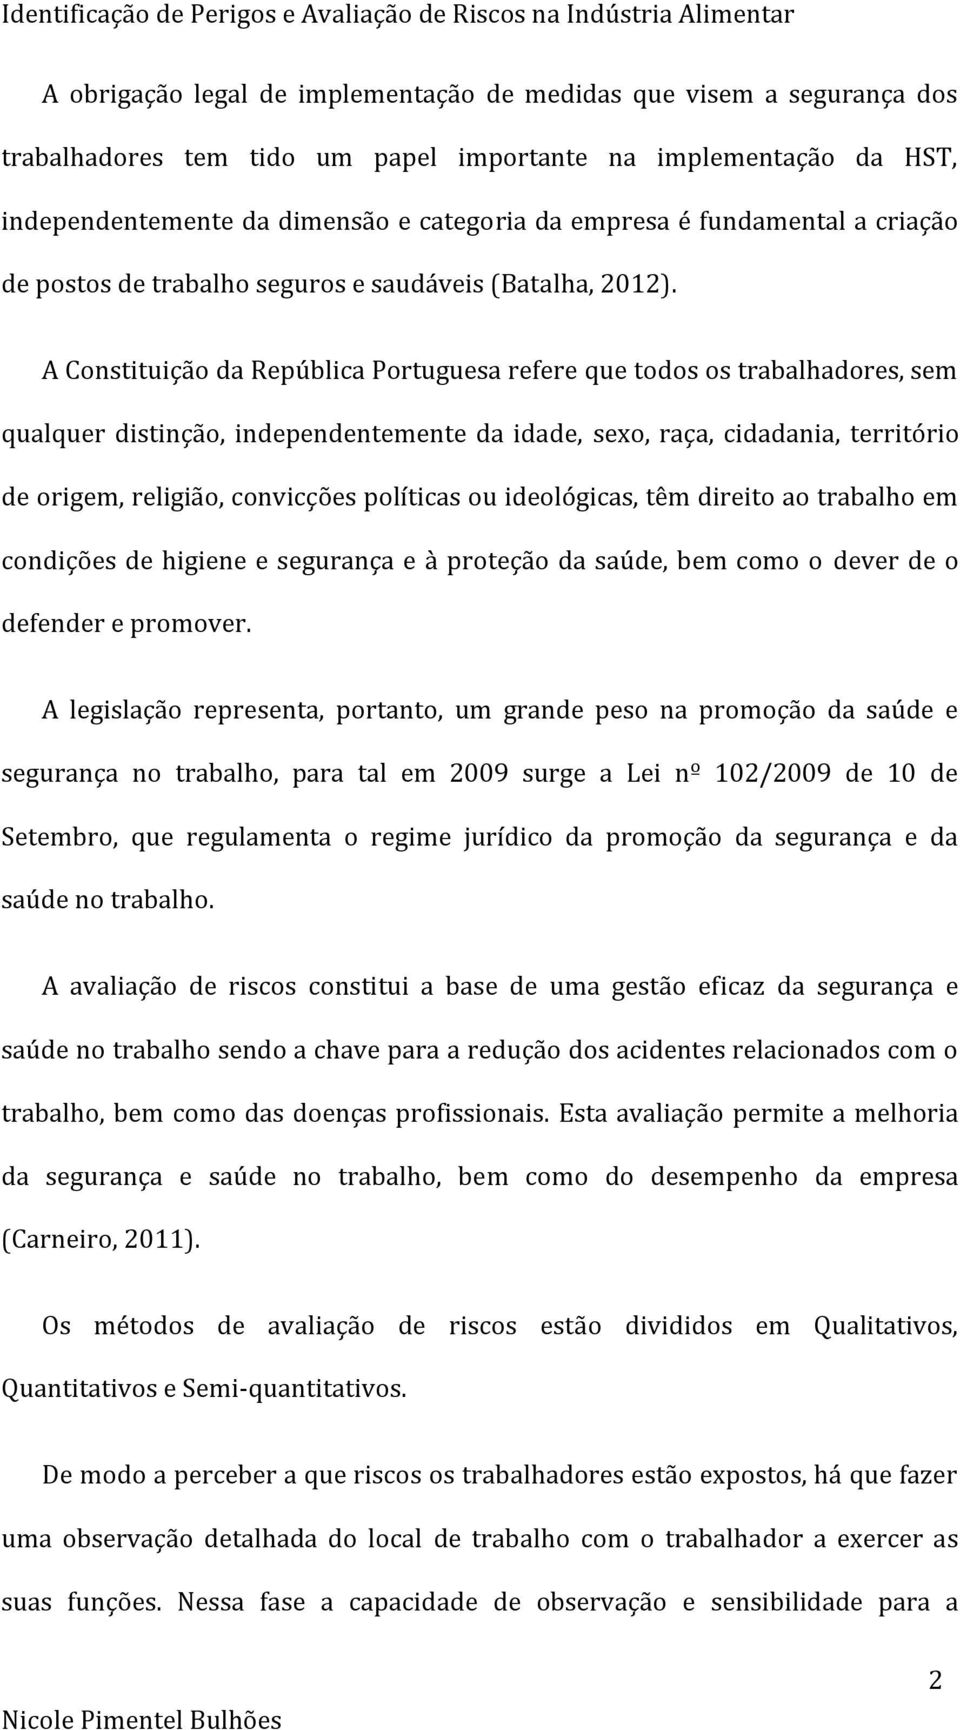 A Constituição da República Portuguesa refere que todos os trabalhadores, sem qualquer distinção, independentemente da idade, sexo, raça, cidadania, território de origem, religião, convicções